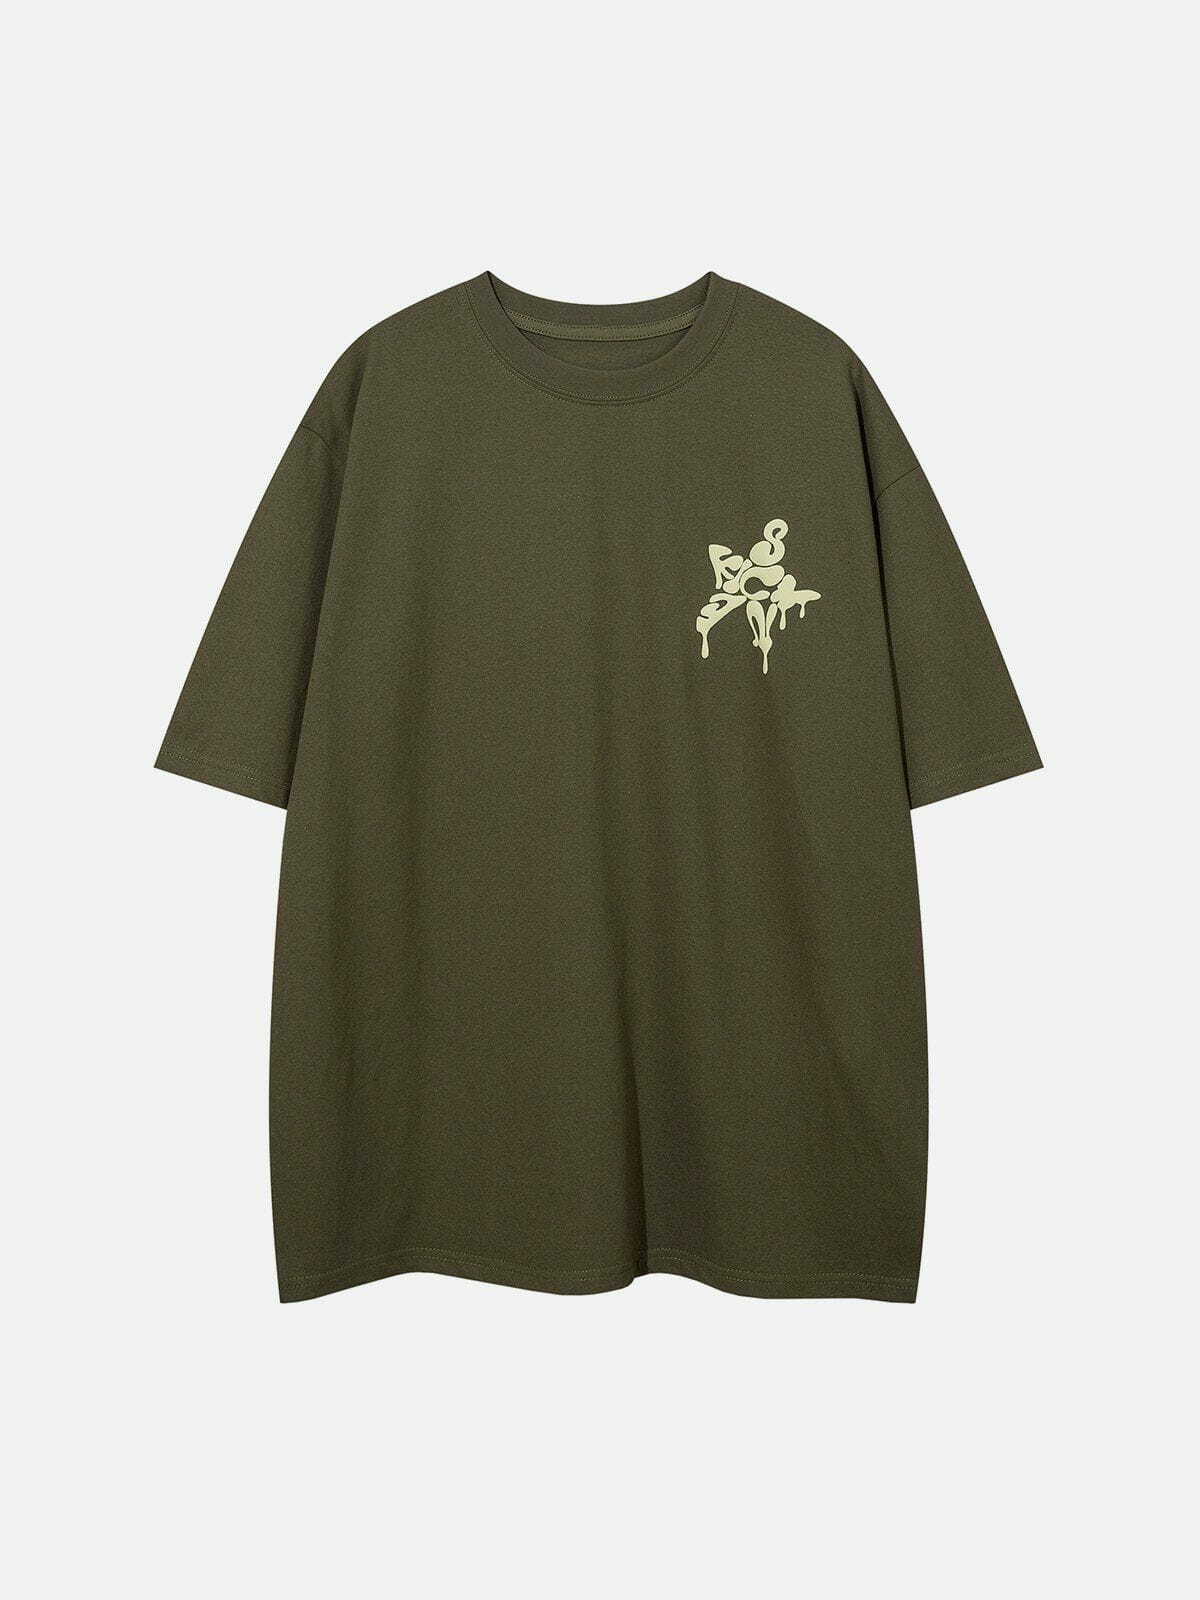 revolutionary star print tee edgy  retro urban fashion shirt 3345